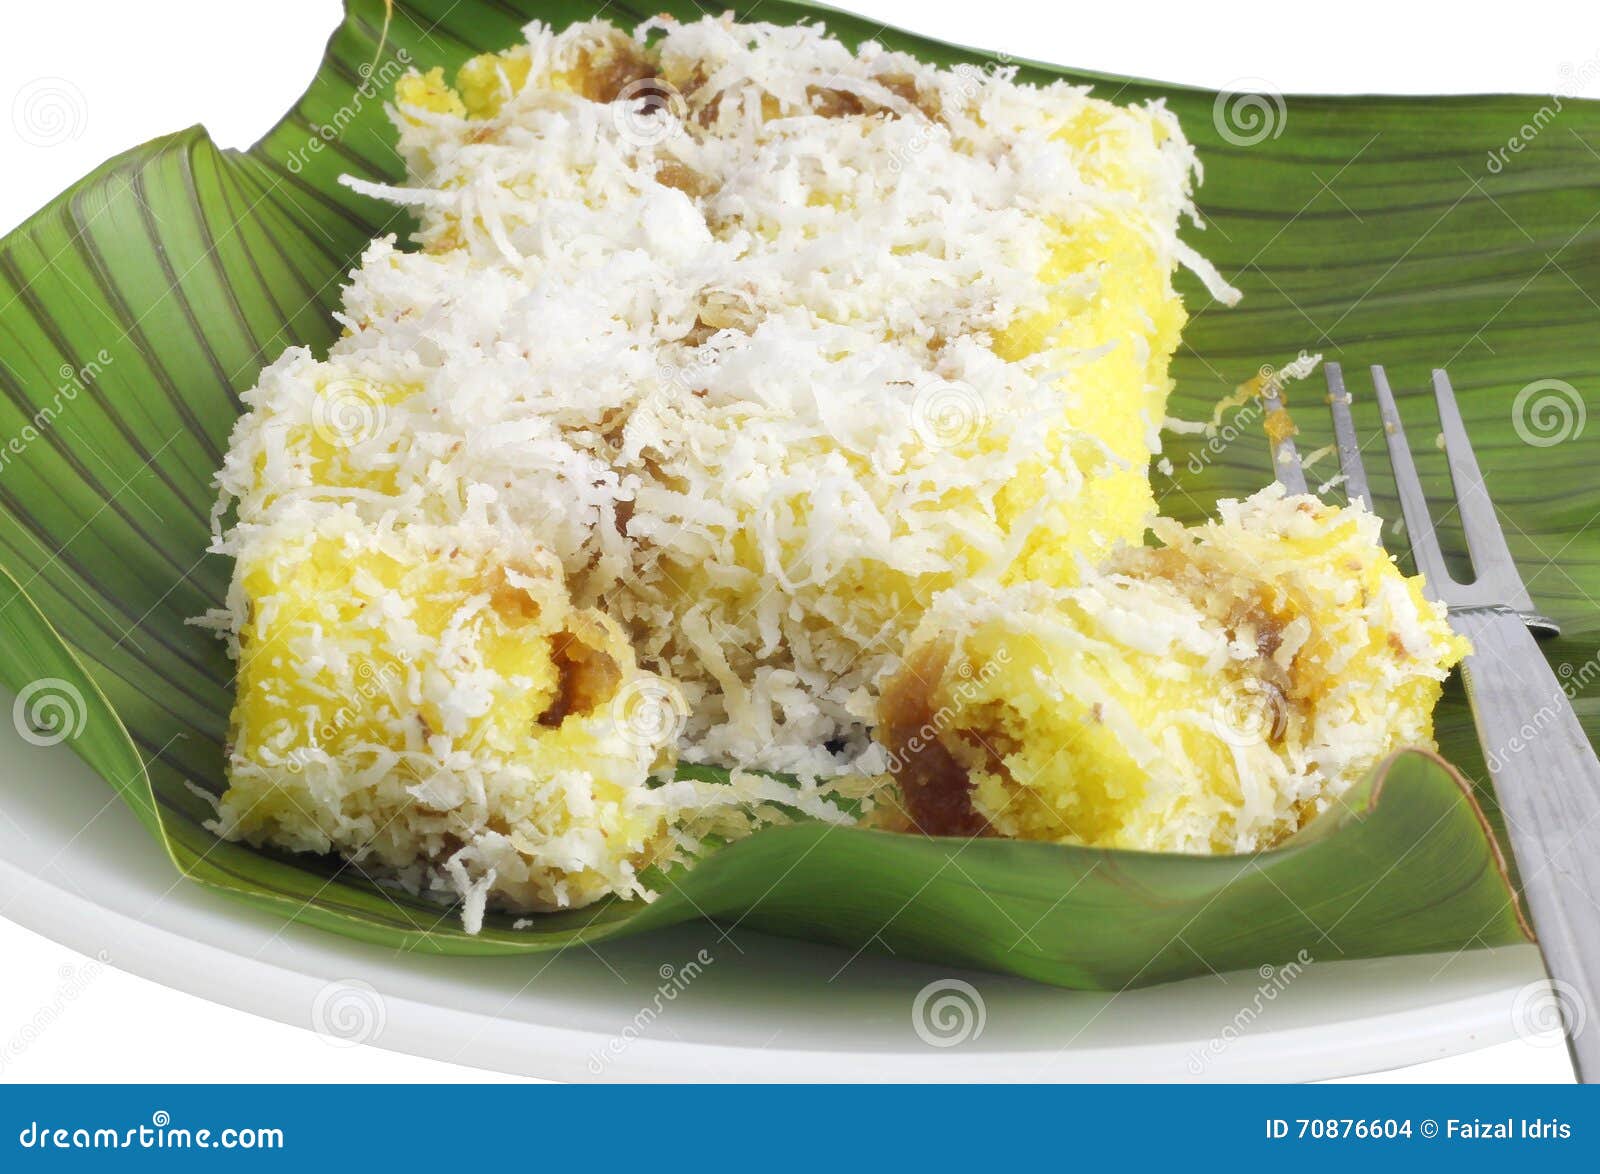 popular kuih putu bambu durian